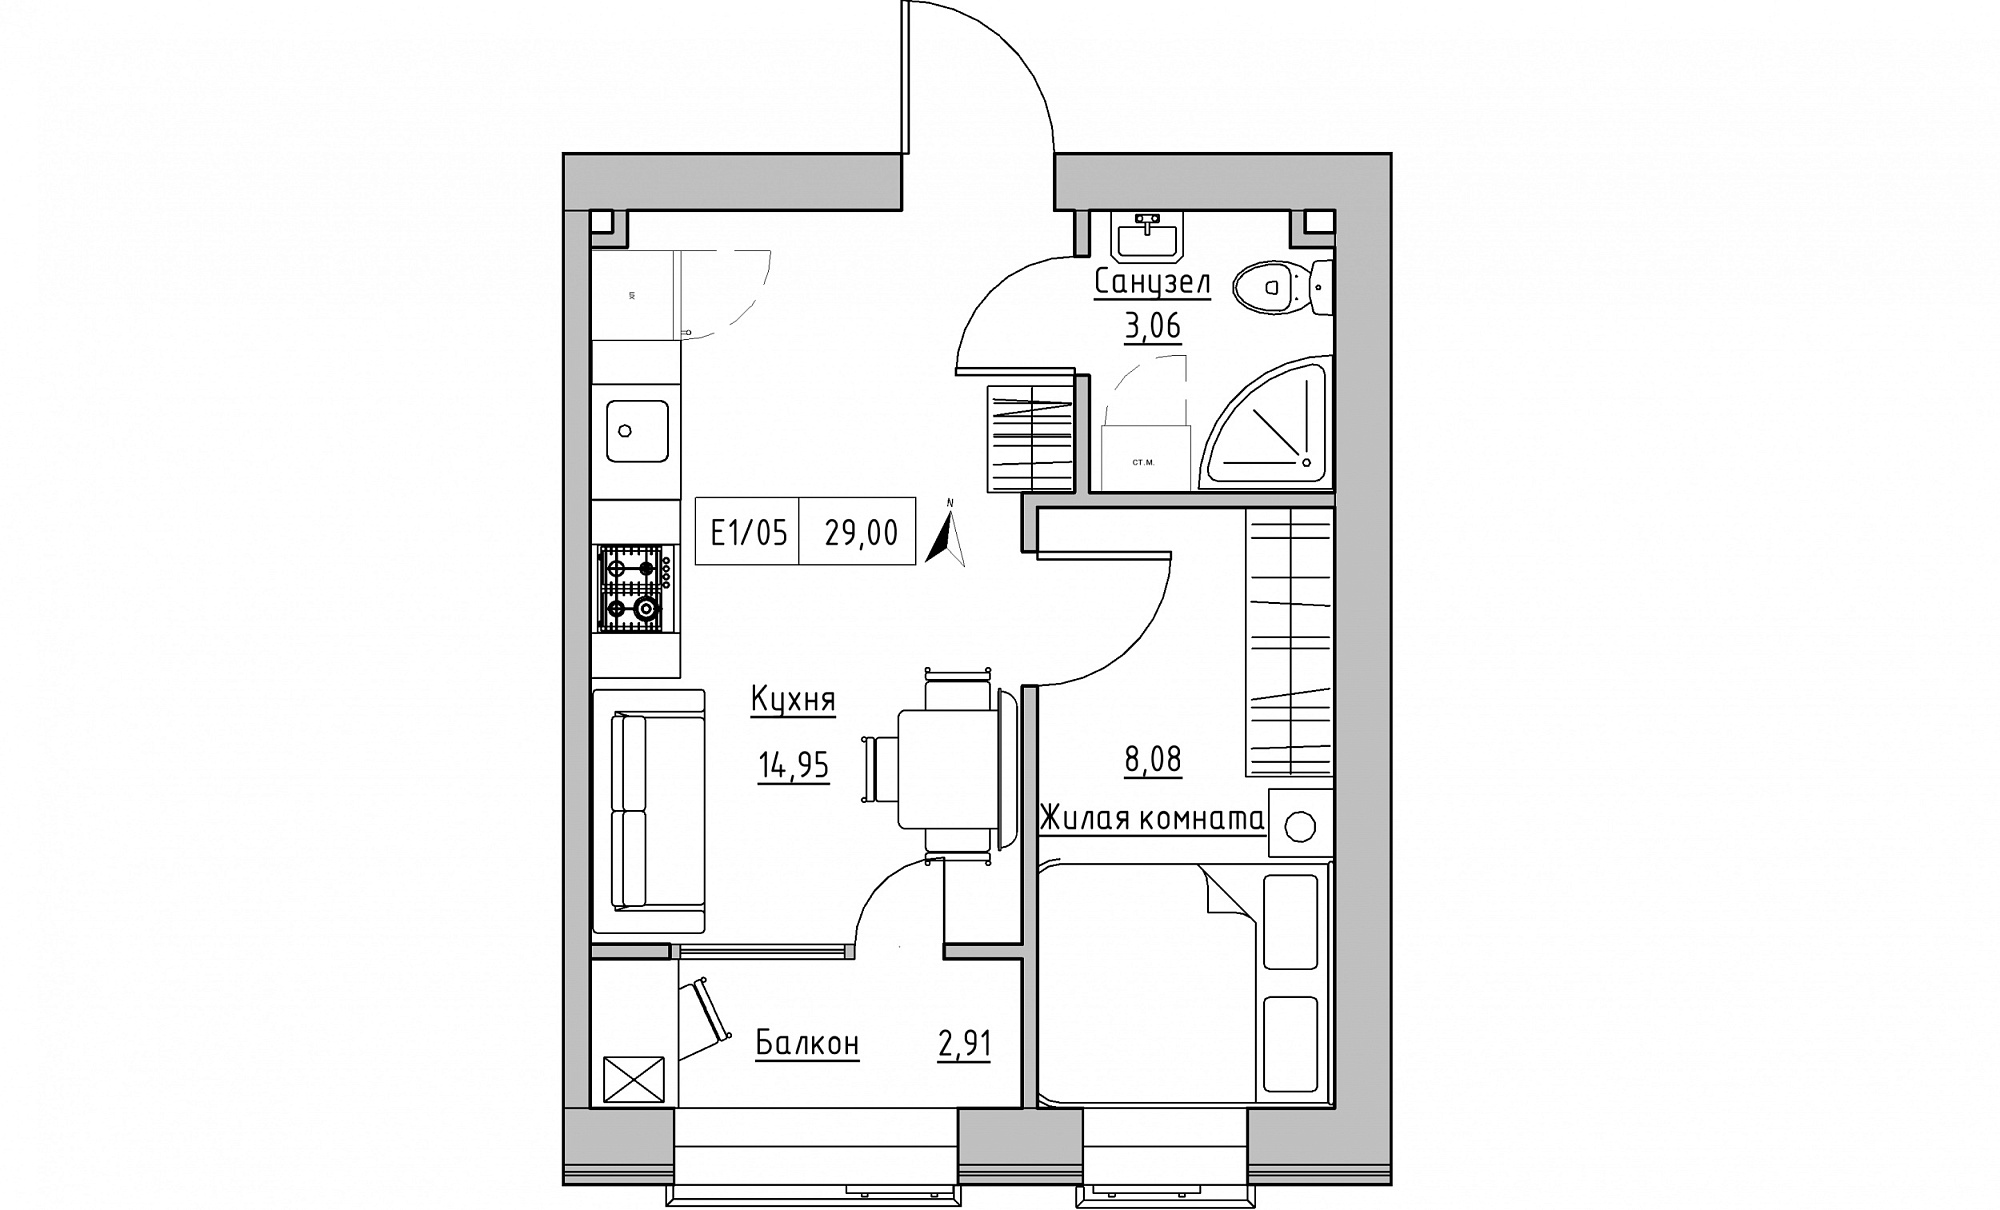 Планування 1-к квартира площею 29м2, KS-015-04/0009.